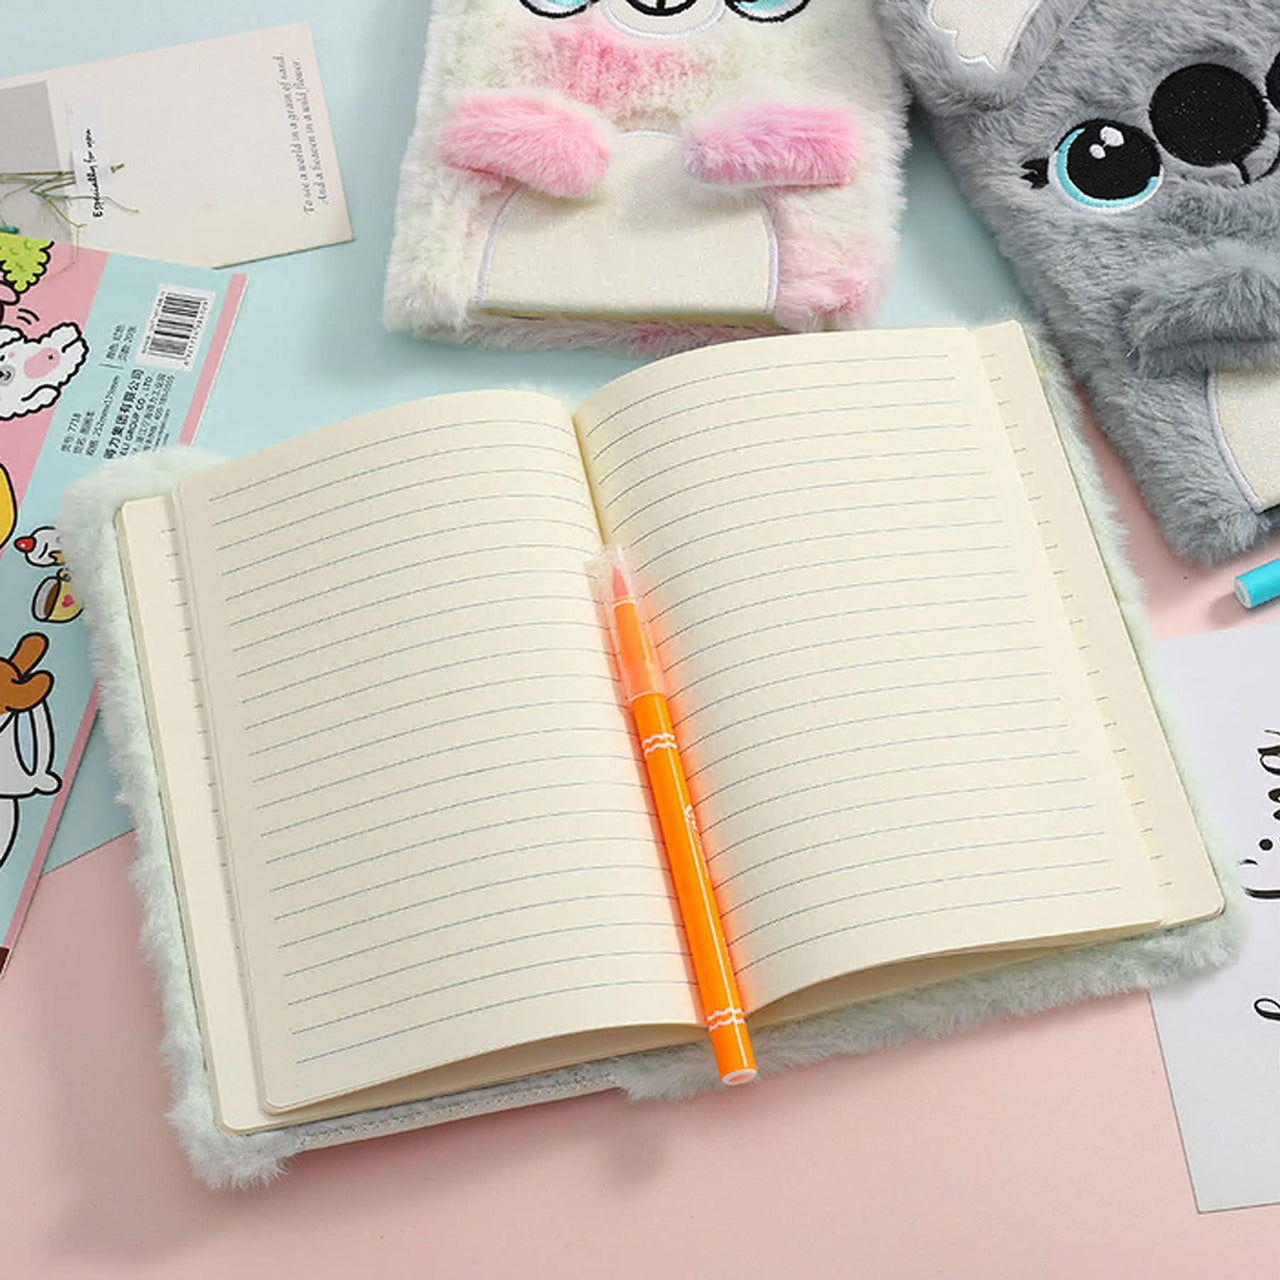 Koala Cartoon  Fuzzy Plush Writing Notepad